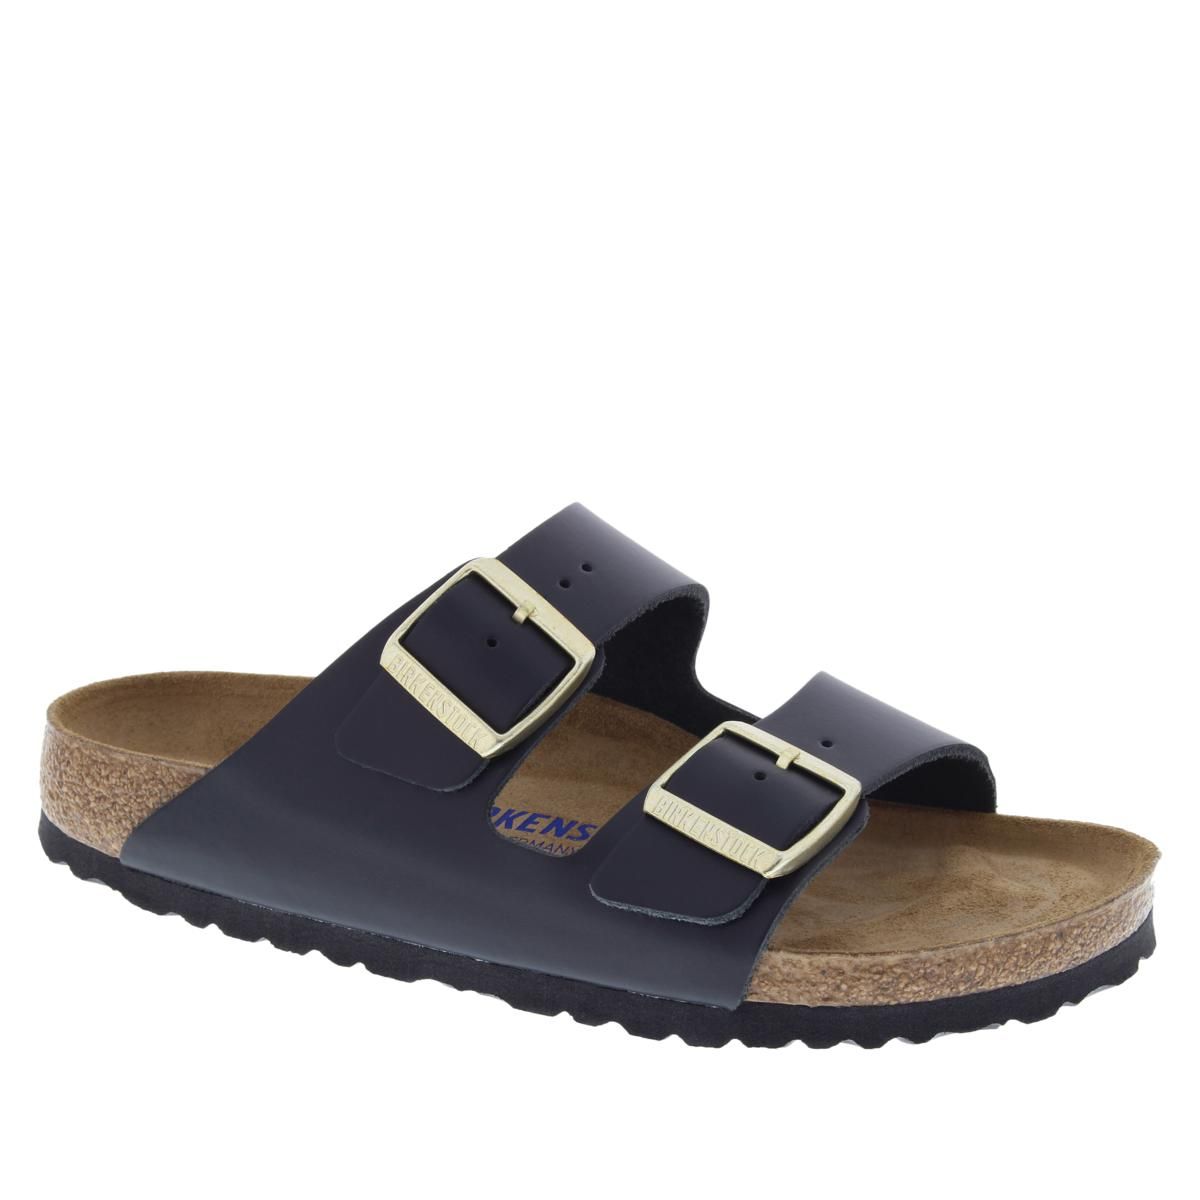 Birkenstock Arizona Soft Footbed Leather Sandal - 20492185 | HSN | HSN